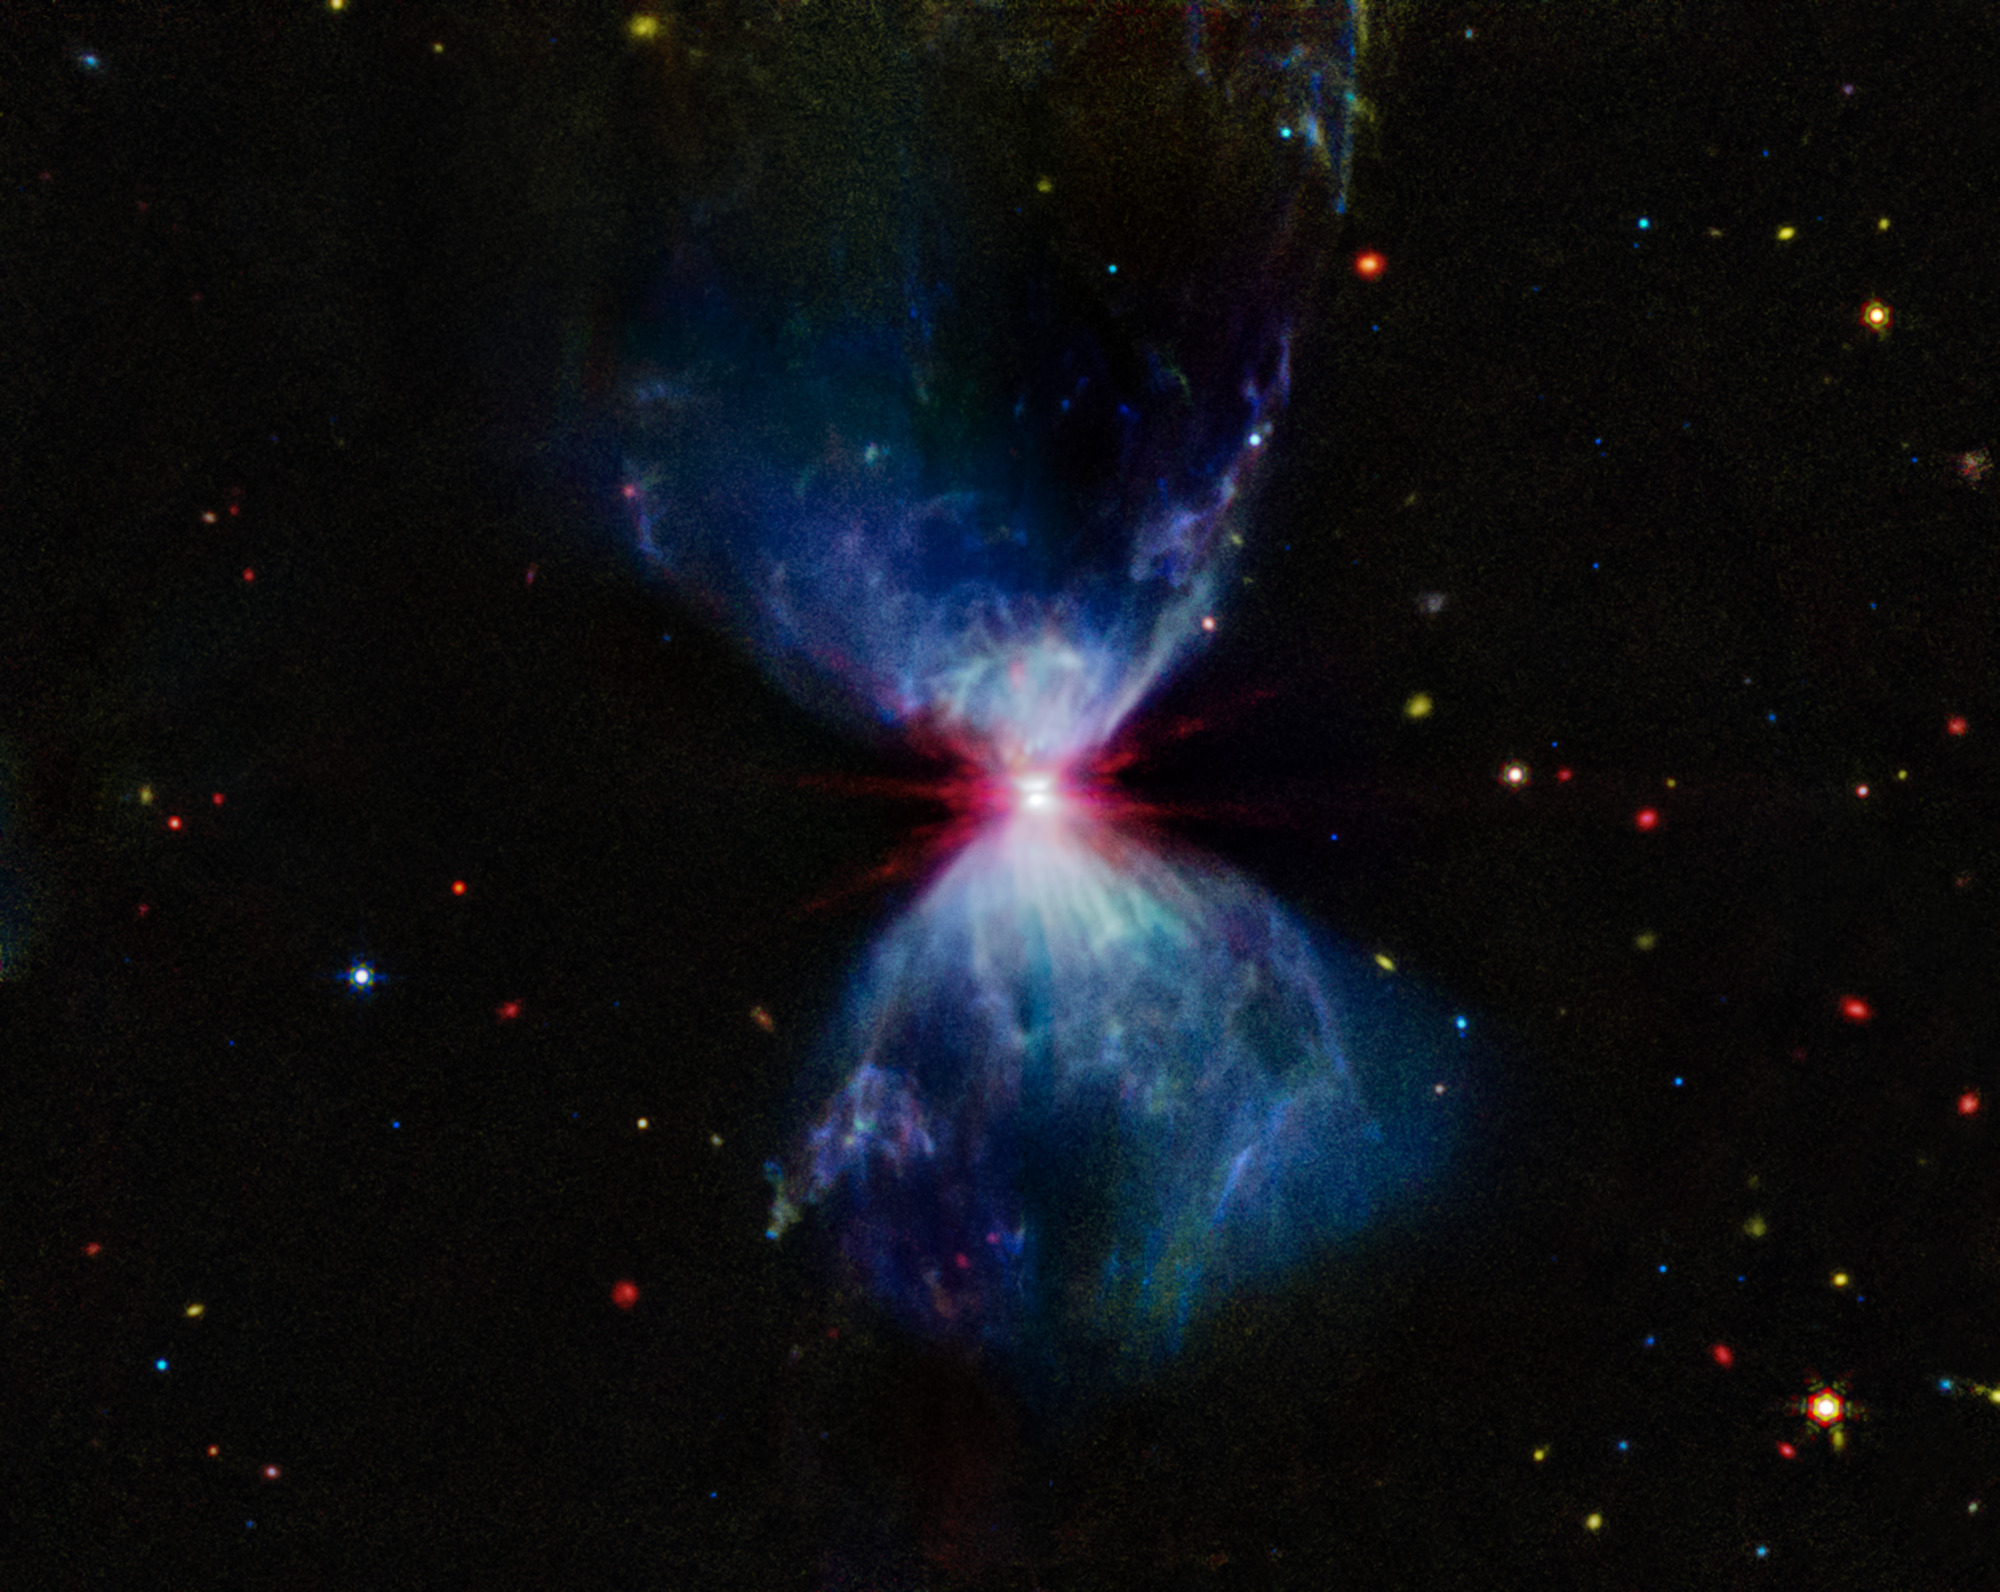 L1527, que se muestra en esta imagen del MIRI (Mid-Infrared Instrument) del telescopio espacial James Webb de la NASA, es una nube molecular que alberga una protoestrella. Se encuentra a unos 460 años luz de la Tierra en la constelación de Tauro. La luz azul más difusa y las estructuras filamentosas en la imagen provienen de compuestos orgánicos conocidos como hidrocarburos aromáticos policíclicos (HAP), mientras que el rojo en el centro de esta imagen es una capa gruesa y energizada de gases y polvo que rodea a la protoestrella. La región intermedia, que aparece en blanco, es una mezcla de HAP, gas ionizado y otras moléculas.